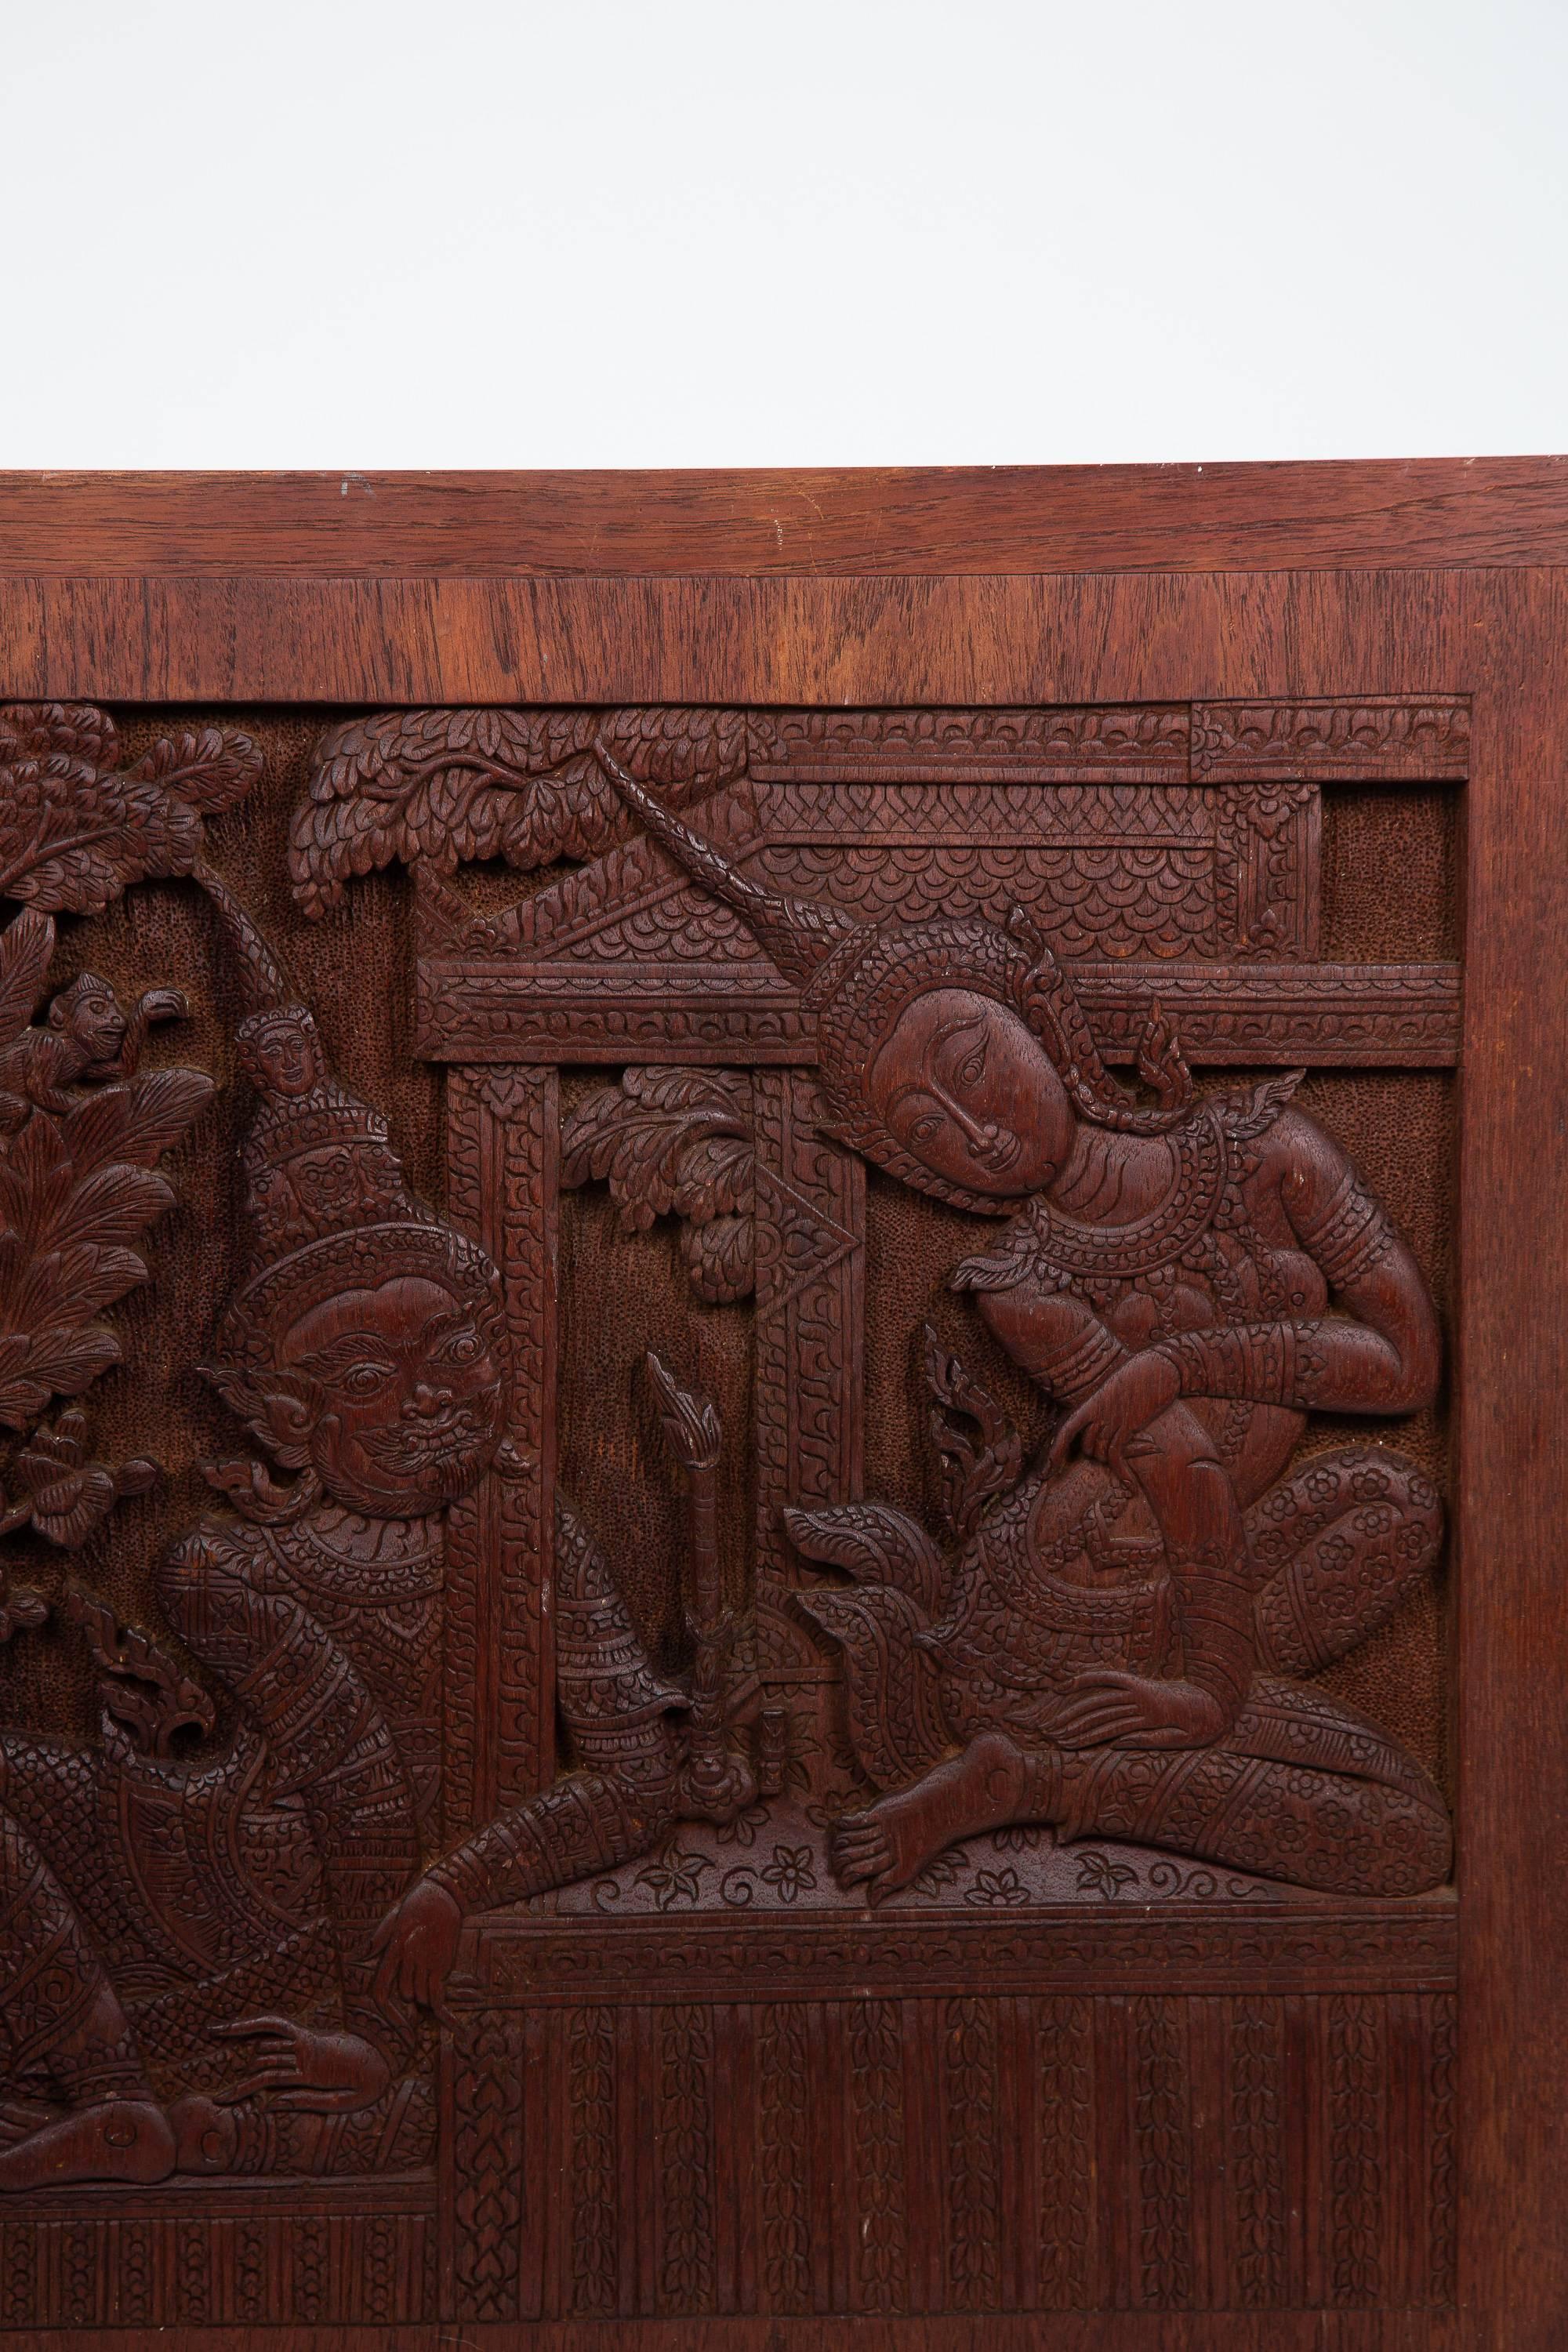 Alte siamesische handgeschnitzte Teakholztafel einer Tempelgöttin und ihres Verehrers oder Gefährten, mit fein detailliertem Hintergrund.